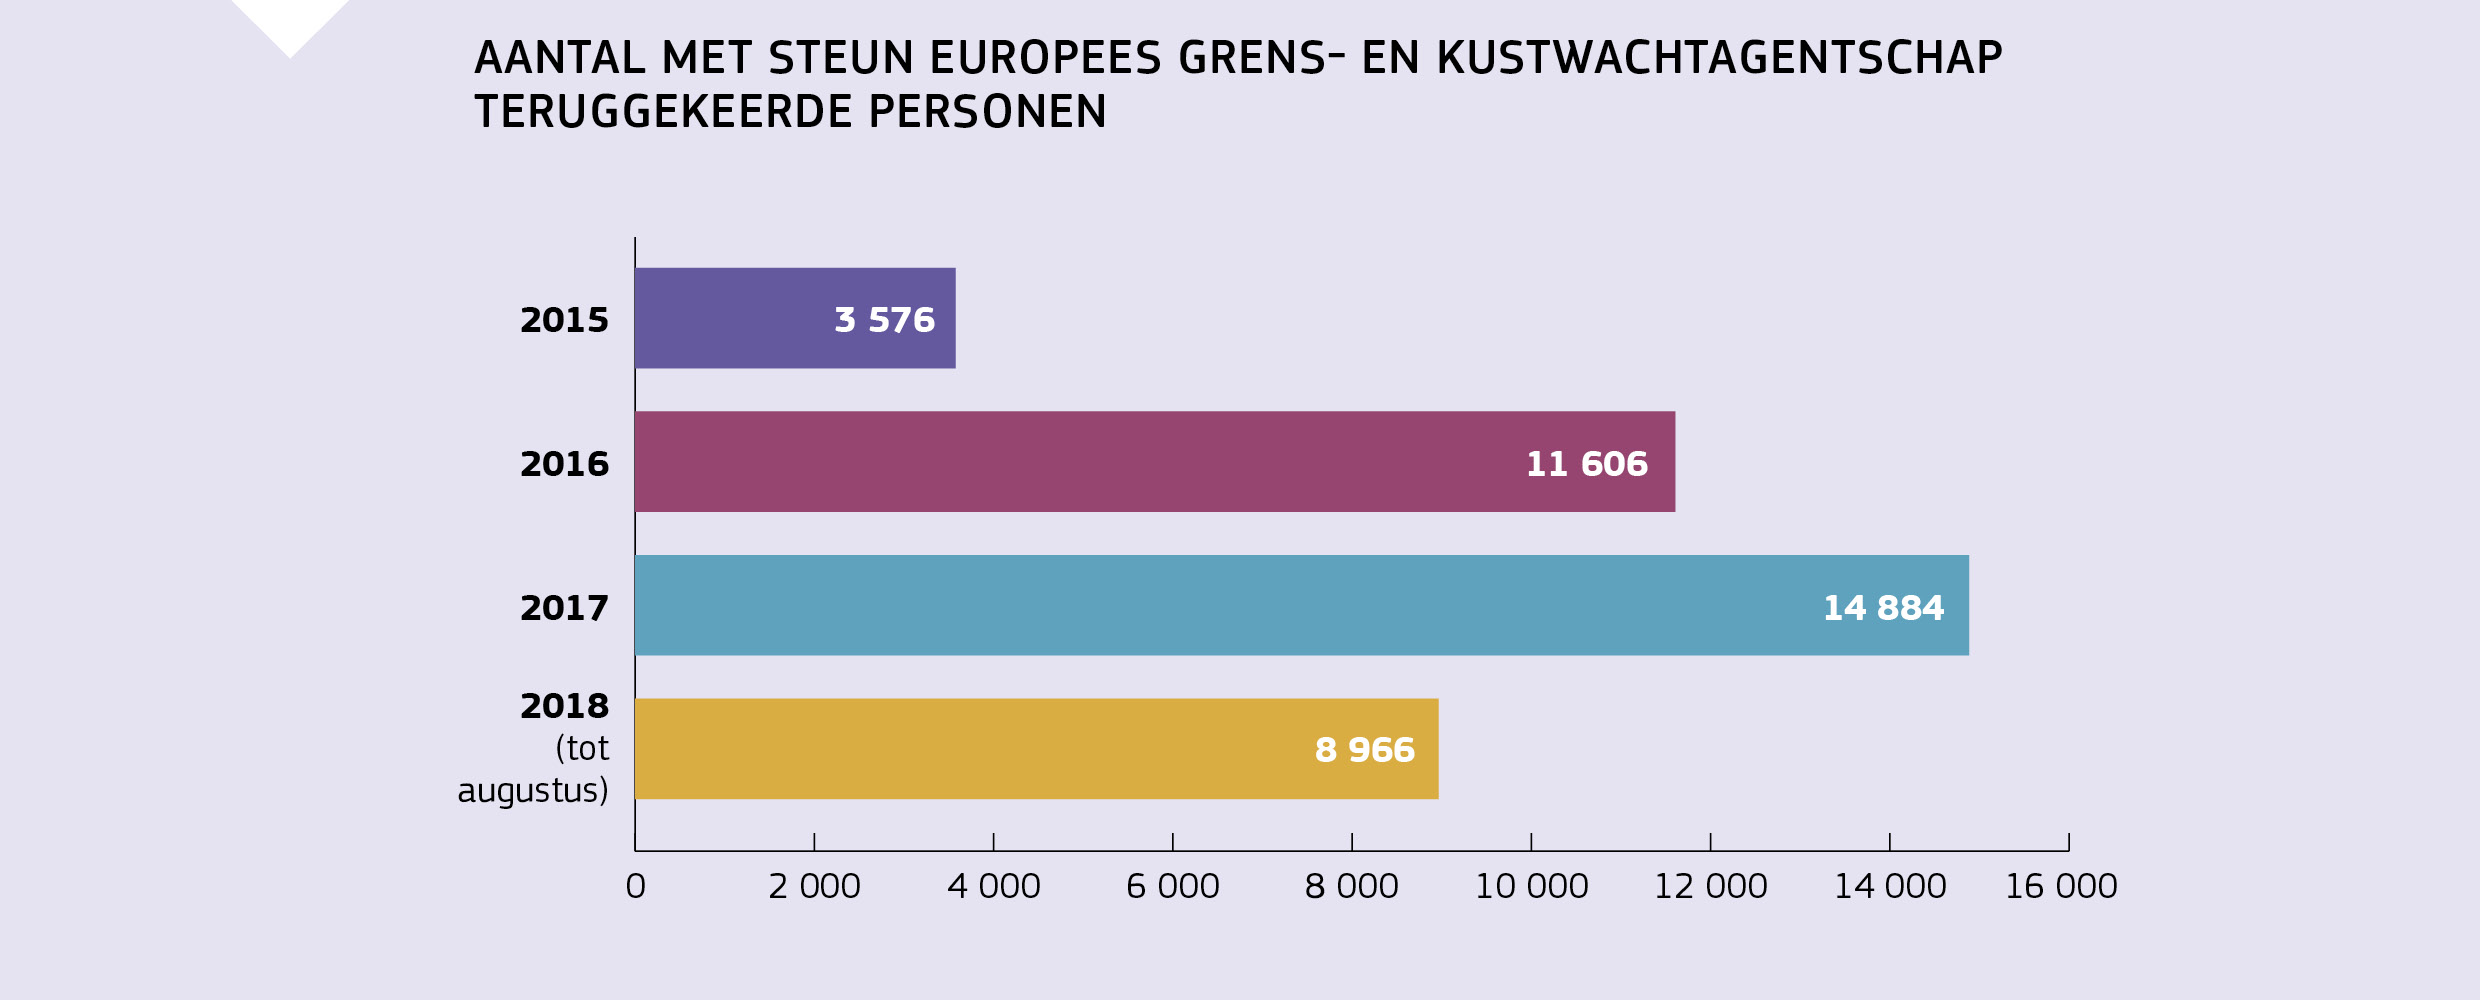 AANTAL MET STEUN EUROPEES GRENS- EN KUSTWACHTAGENTSCHAP TERUGGEKEERDE PERSONEN